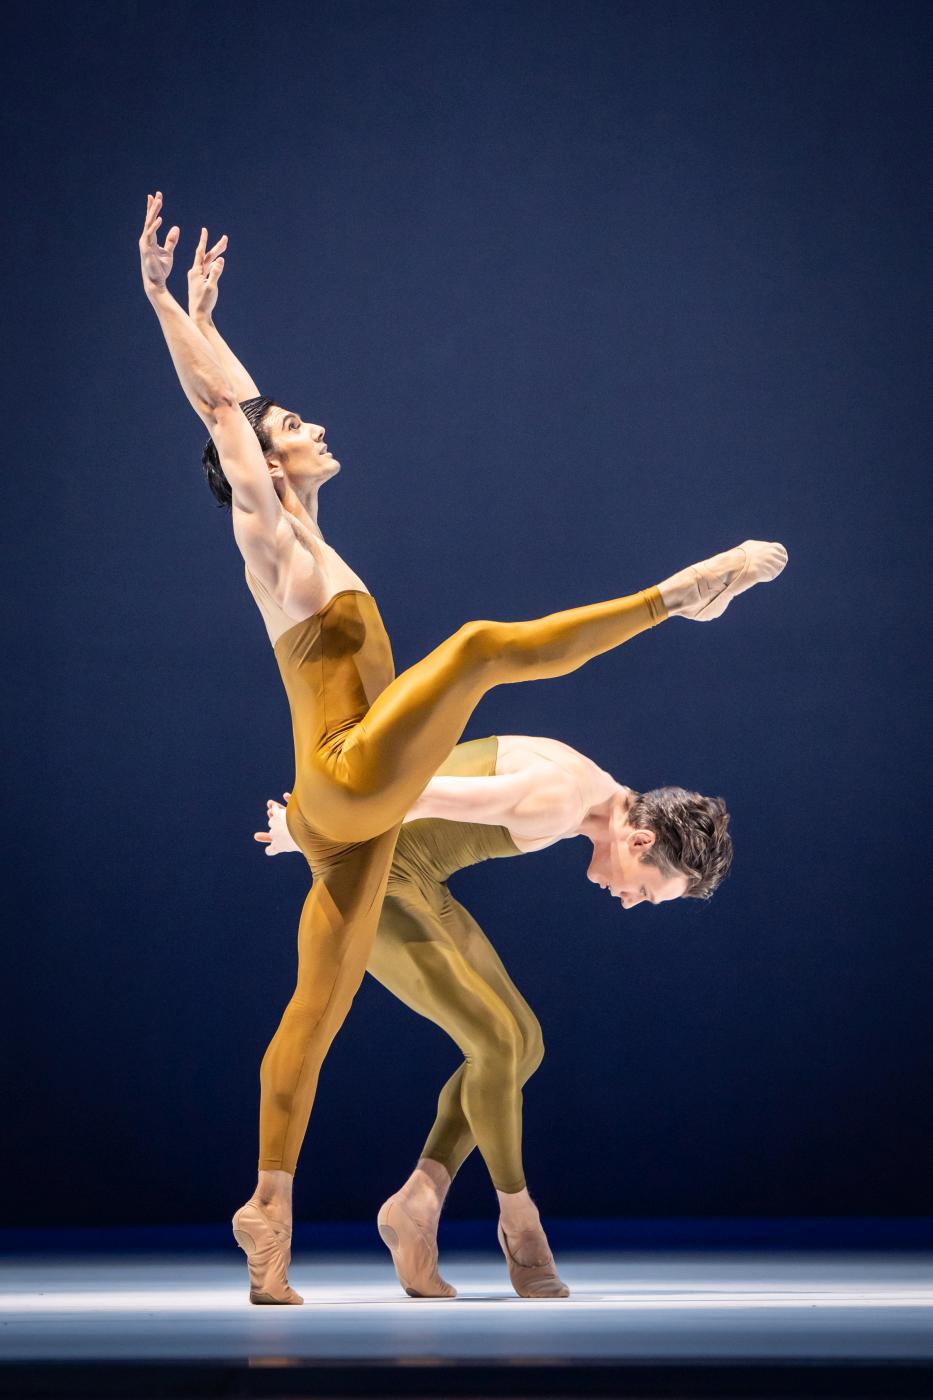 5. D.Vizcayo and G.Wielick, “Goldberg-Variationen” by H.Spoerli, Vienna State Ballet 2023 © Vienna State Ballet / A.Taylor